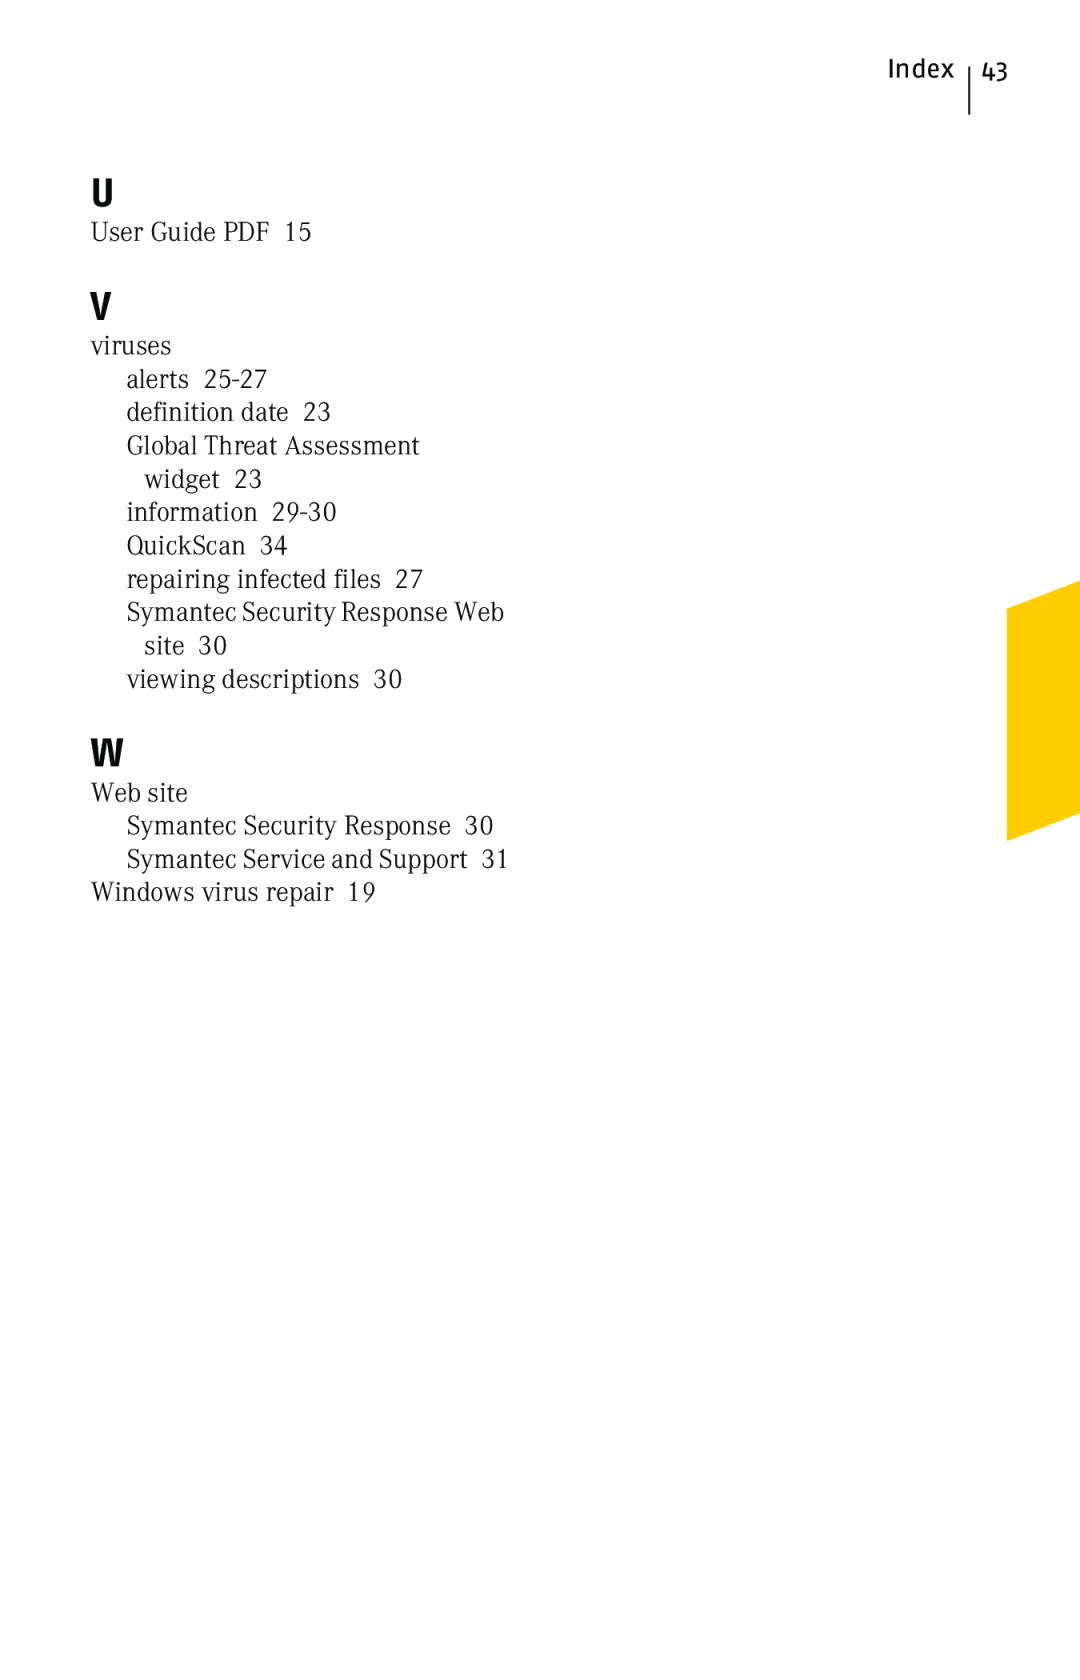 Symantec 10 manual Index, User Guide PDF, viruses, site viewing descriptions, Web site Symantec Security Response 